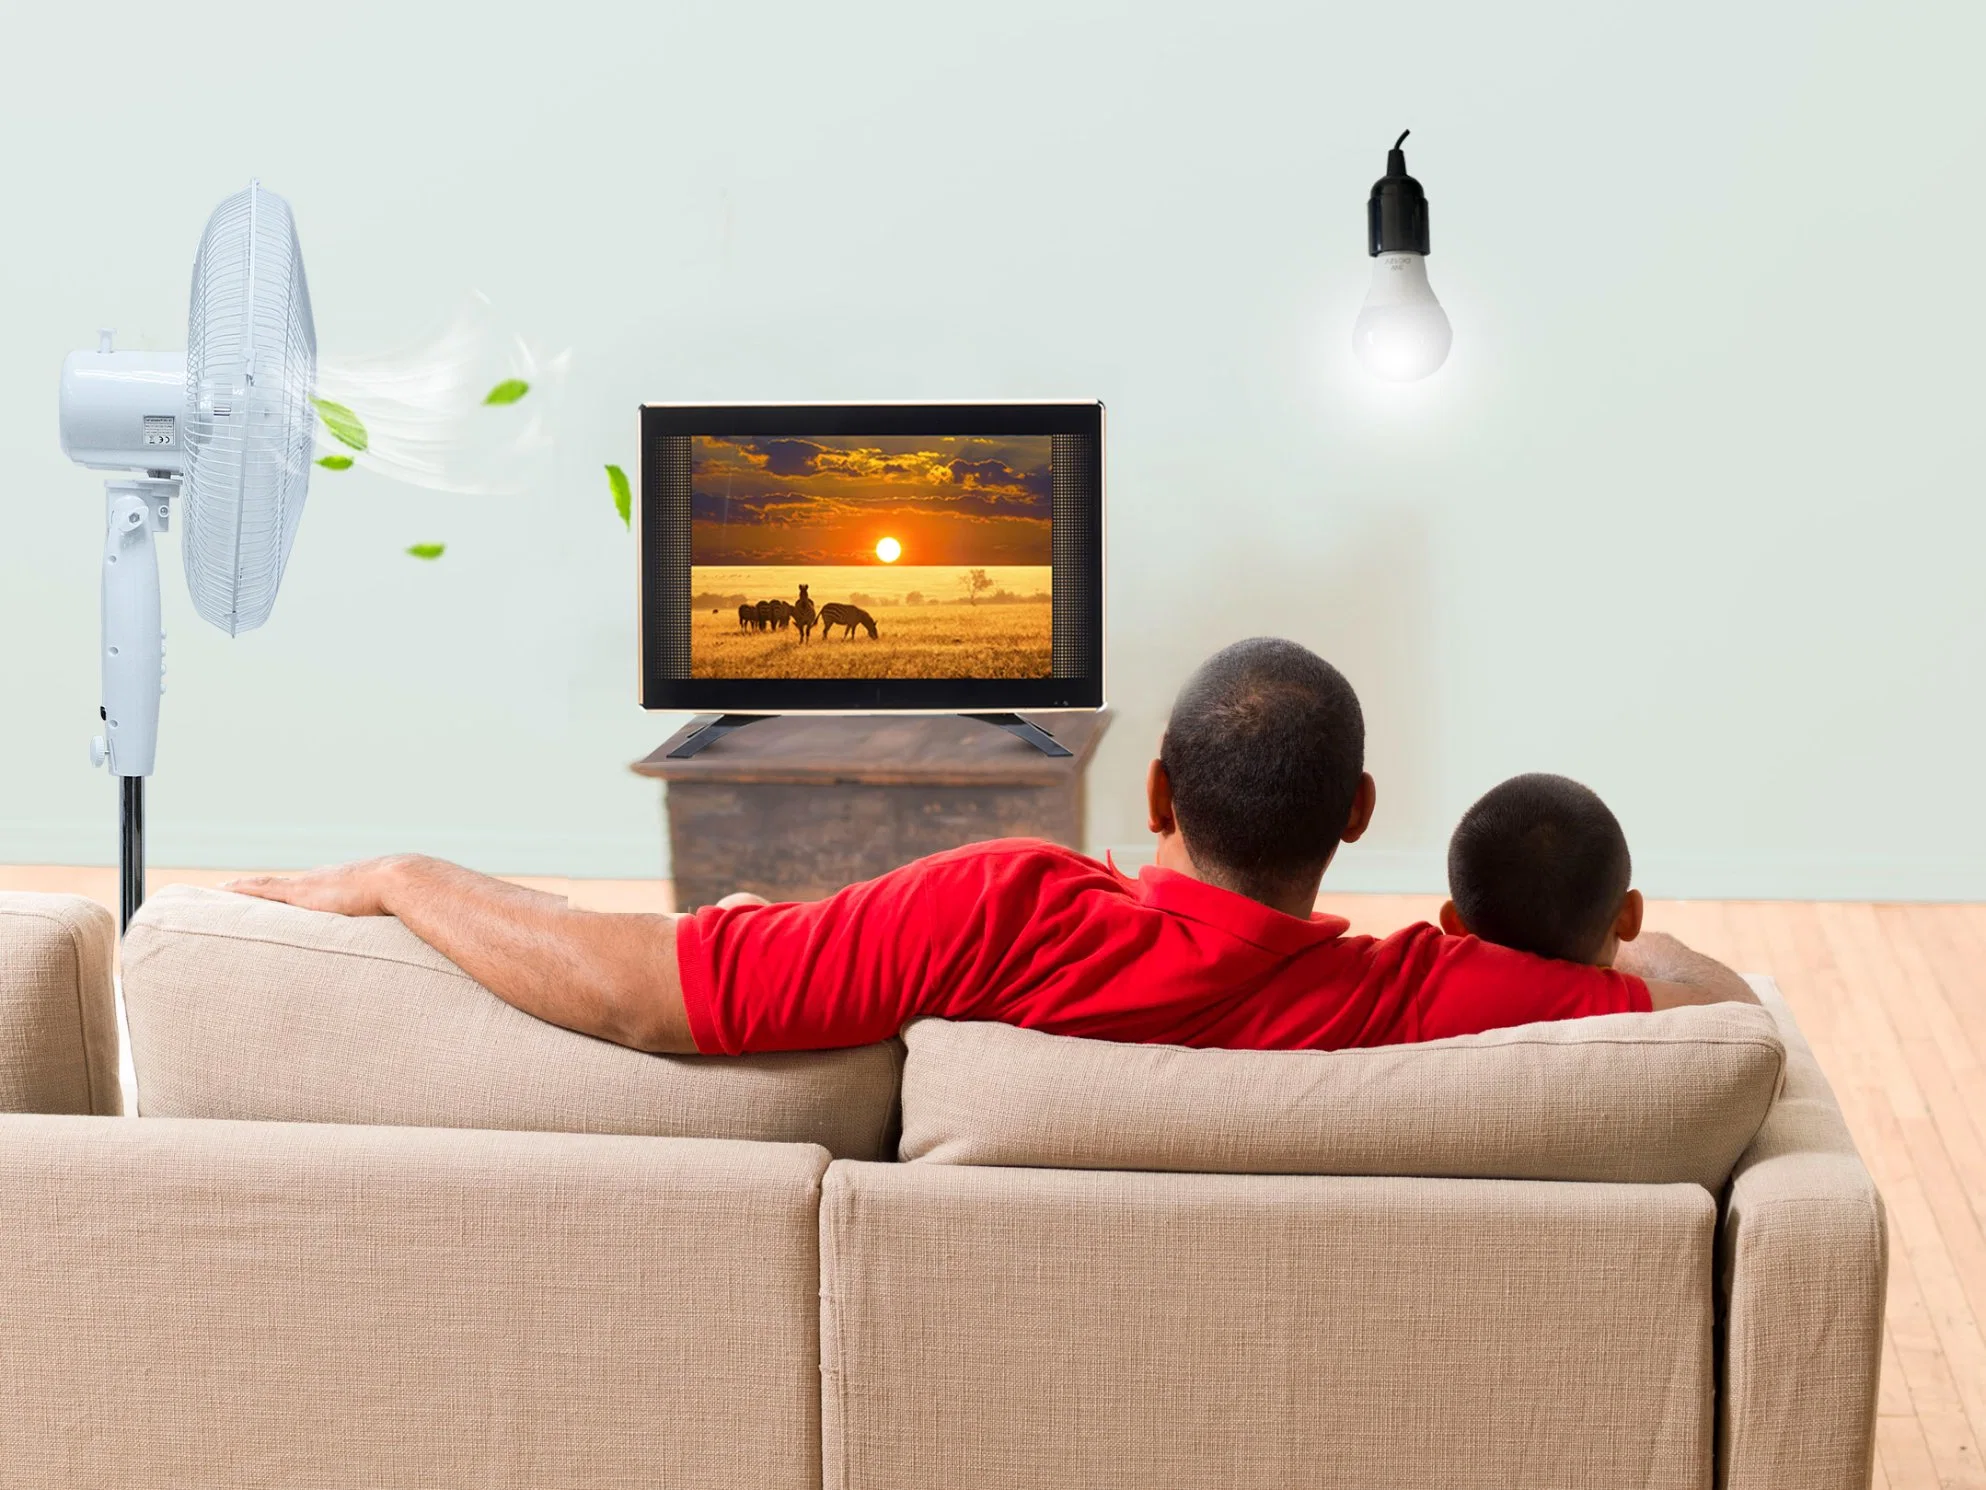 Pague à medida que Usar Iluminação Solar Paygo Sola Sistema TV em casa